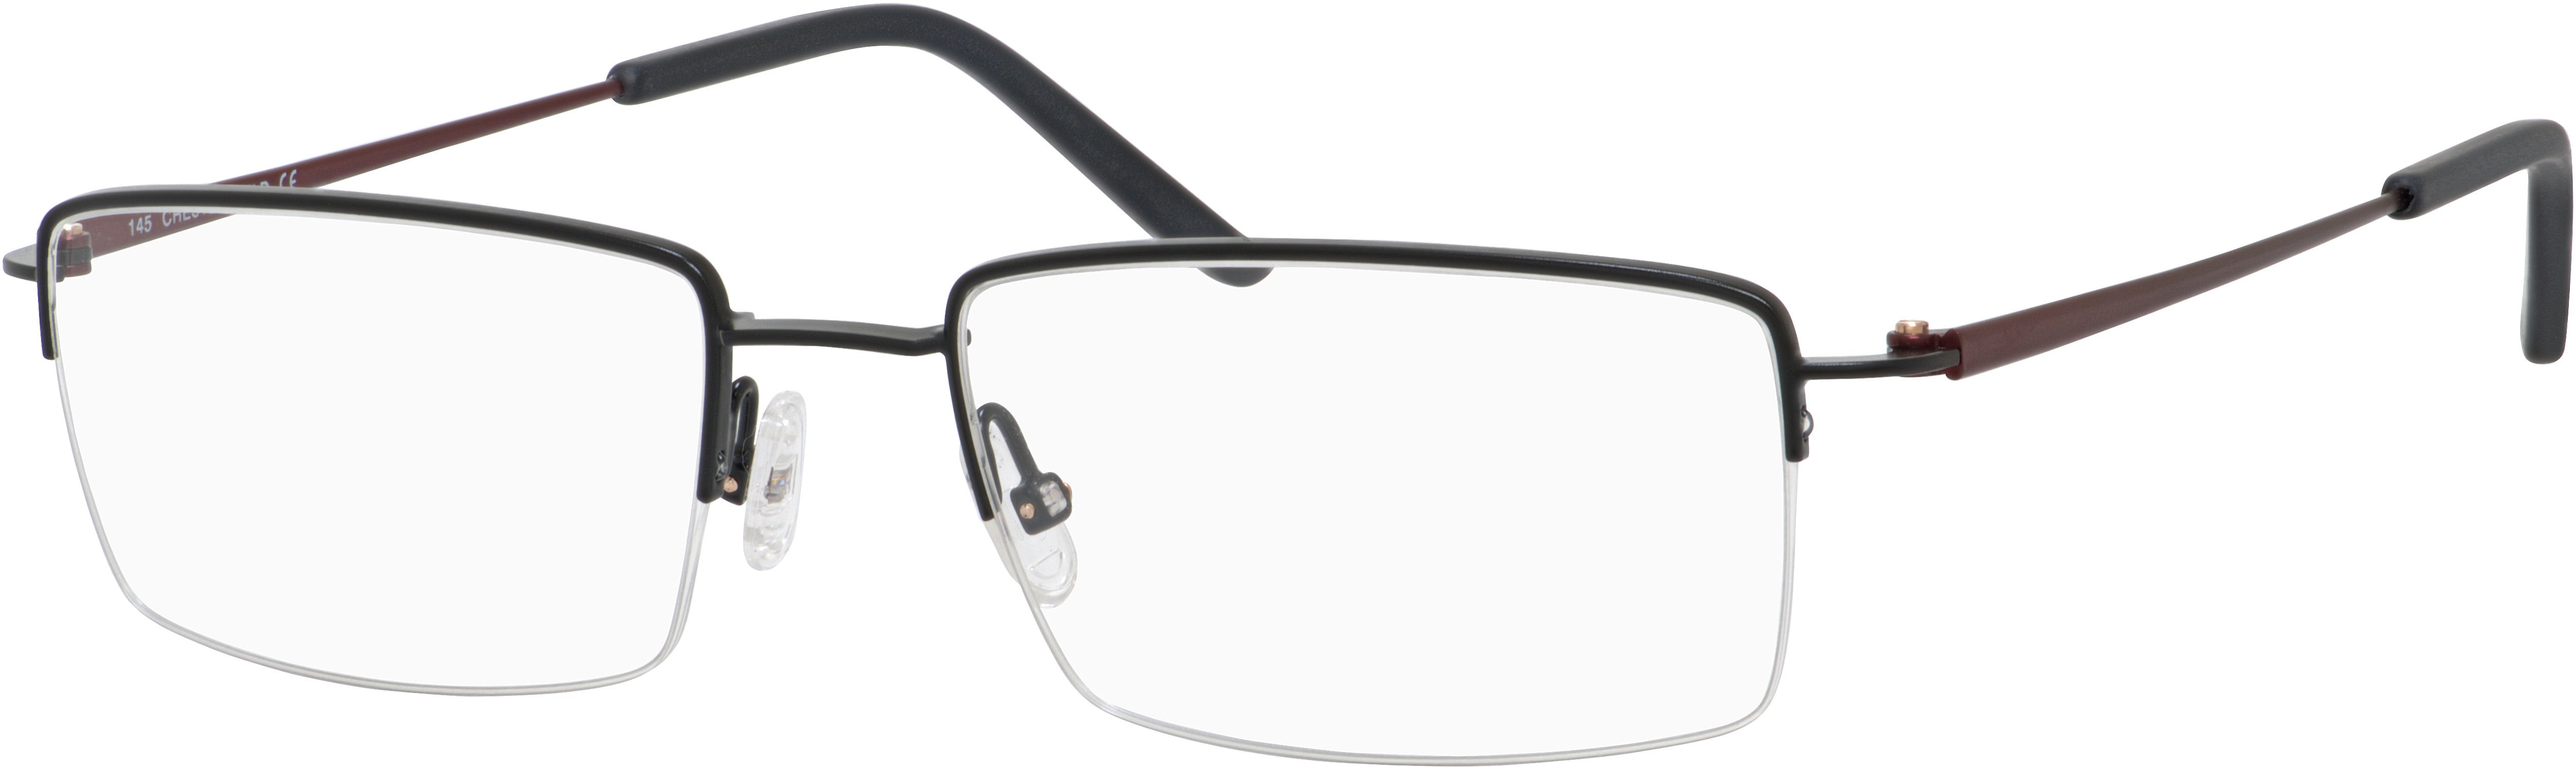  Chesterfield 876 Rectangular Eyeglasses 0003-0003  Black Matte (00 Demo Lens)